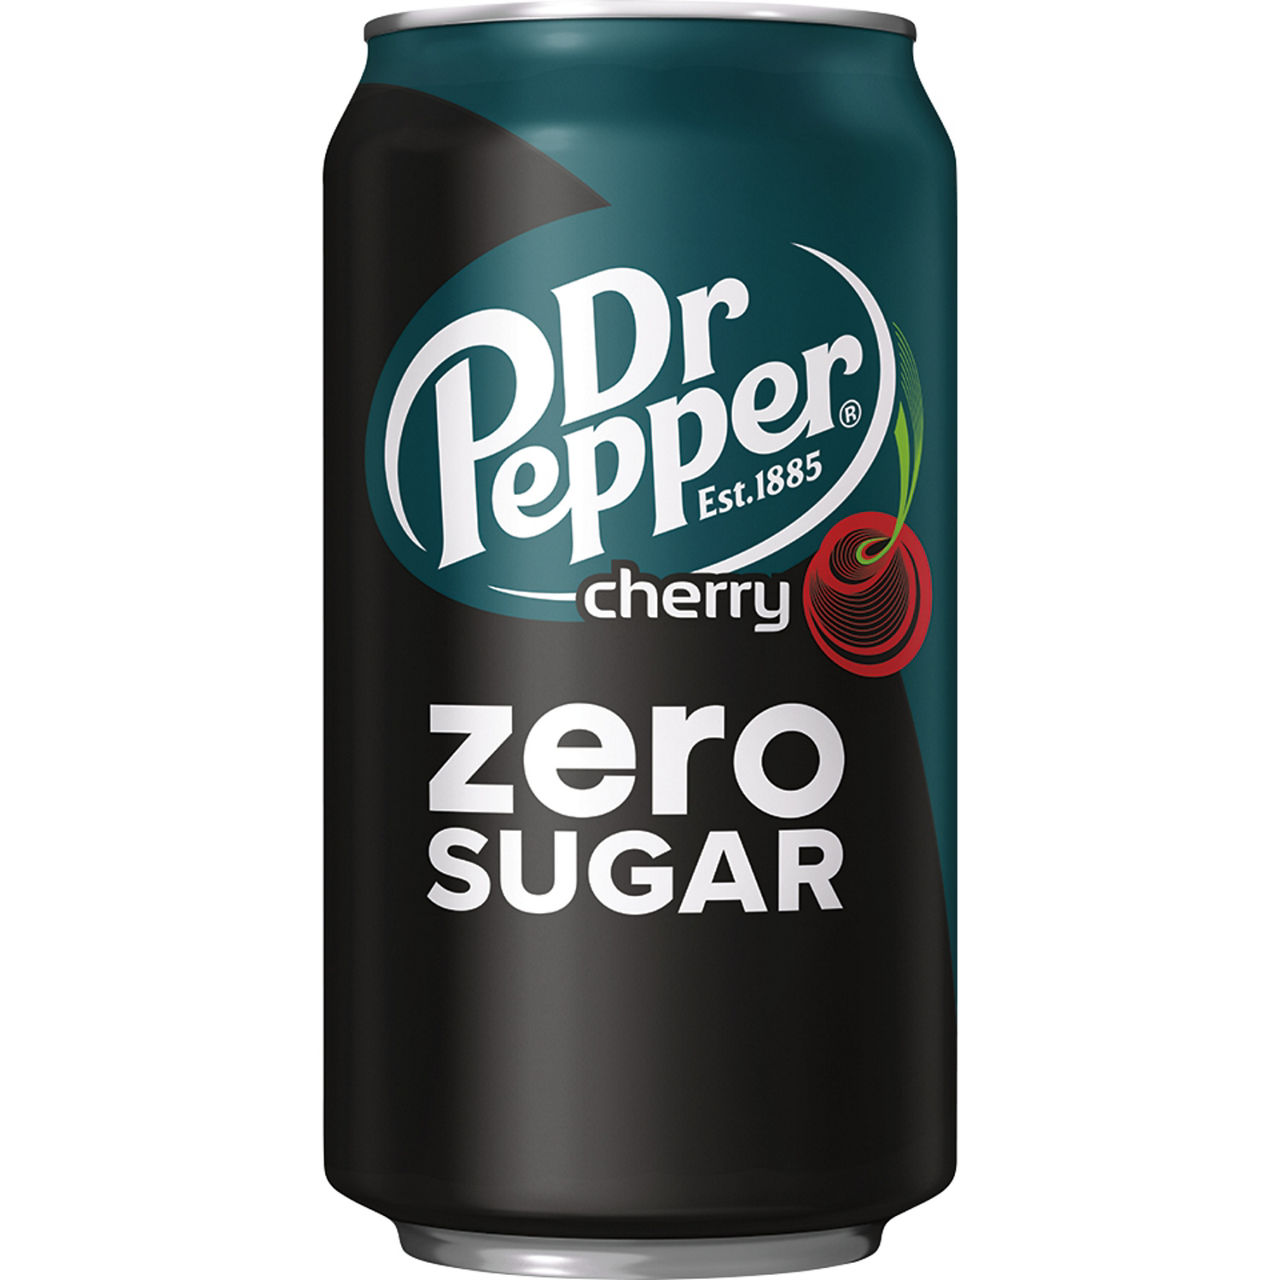 Pepper us. Доктор Пеппер Cherry. Доктор Пеппер Зеро Шугар. Газированный напиток Dr.Pepper Classic 0.355ml. (Америка). Dr. Pepper напиток ГАЗ. Cherry 0,355л.